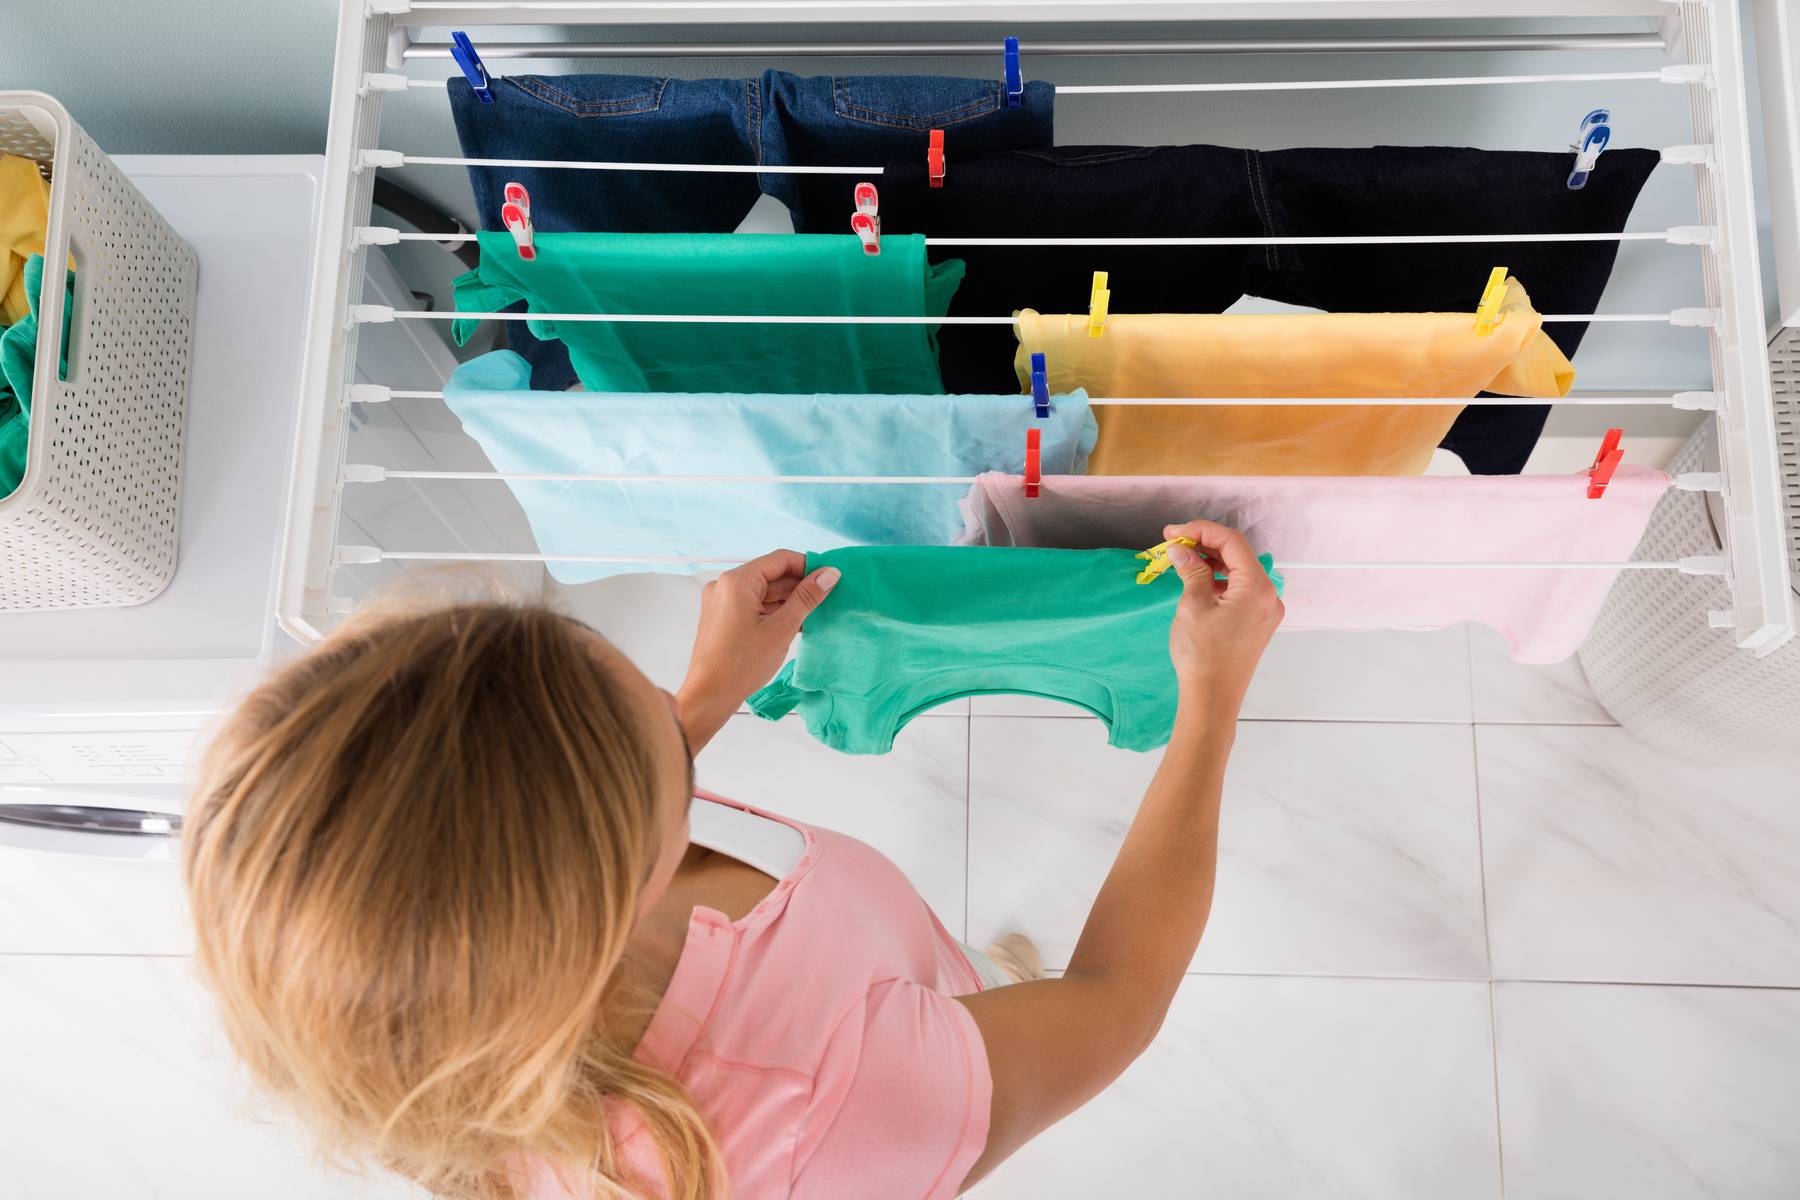 Secar ropa en interiores: ¿un riesgo para tu salud?